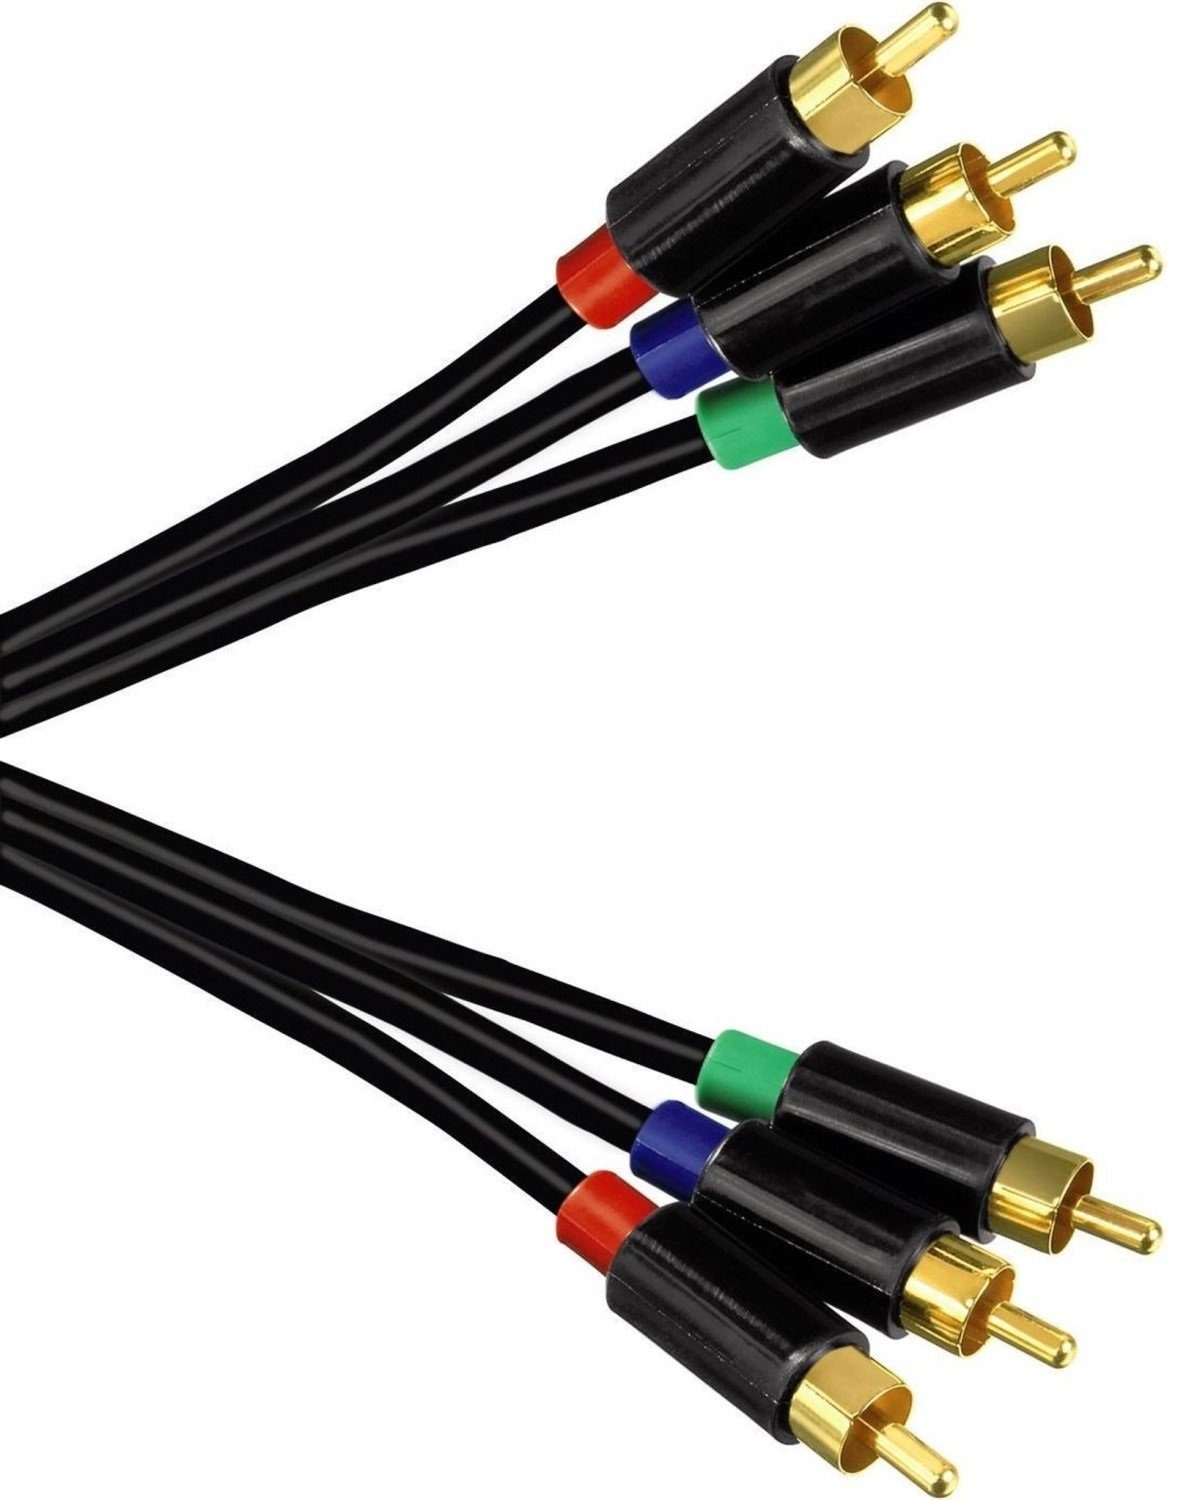 Hama 1,5m YUV Komponenten-Kabel RGB Component HDTV Video-Kabel, Cinch, Cinch, Koax HD TV Kabel mit RCA- Chinch-Anschluss YUV, für TV, Receiver etc